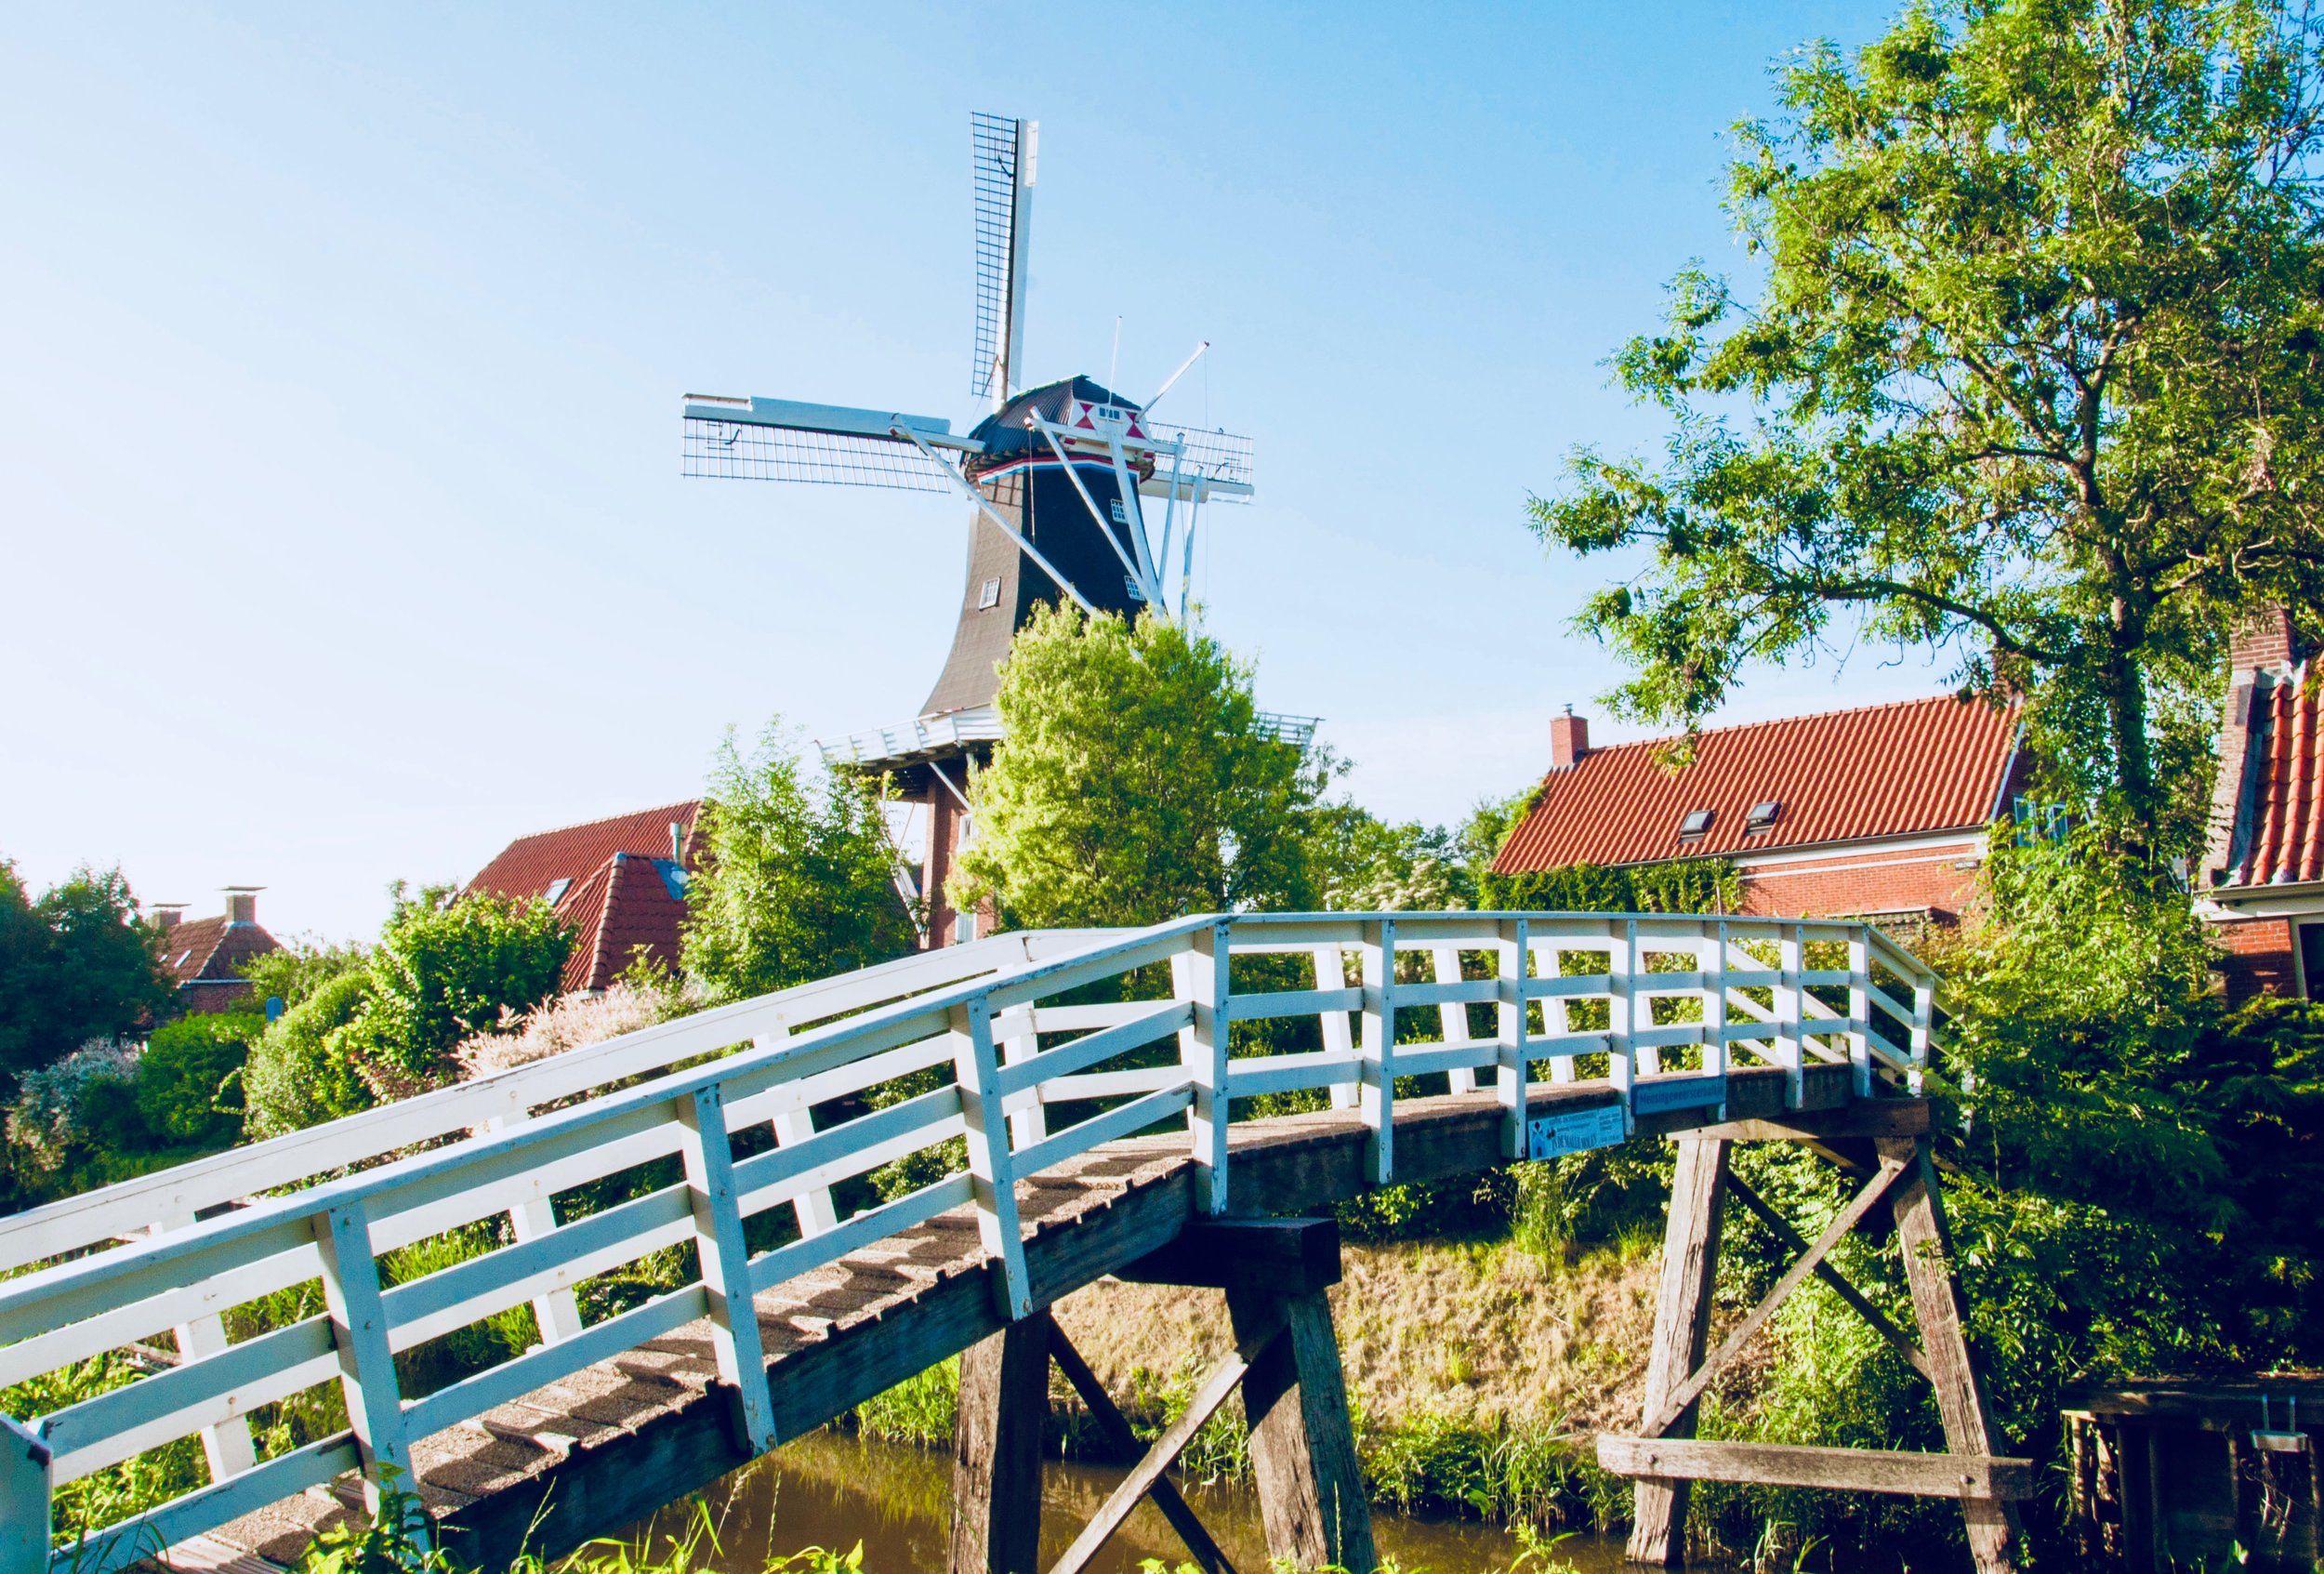  The windmill in Mensingeweer, Holland.  